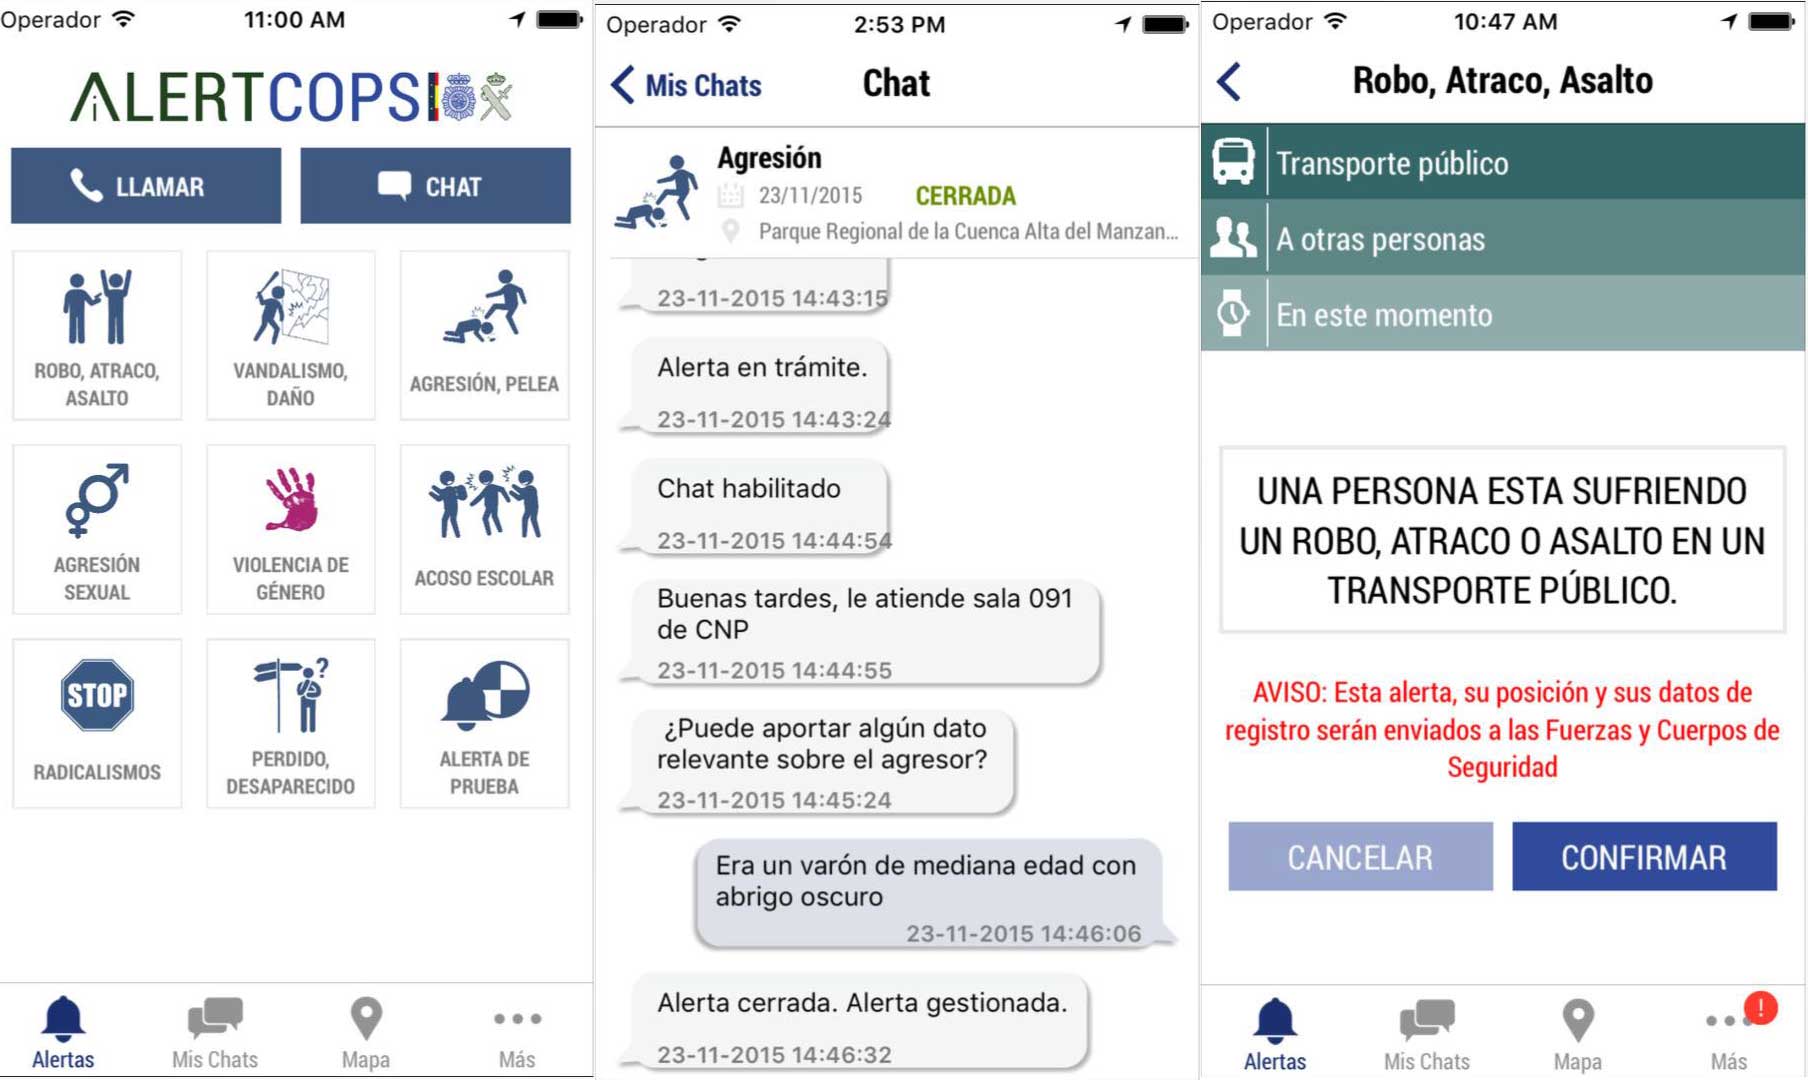 La App AlertCops está disponible en cinco idiomas y permite recoger incidencias en tiempo real